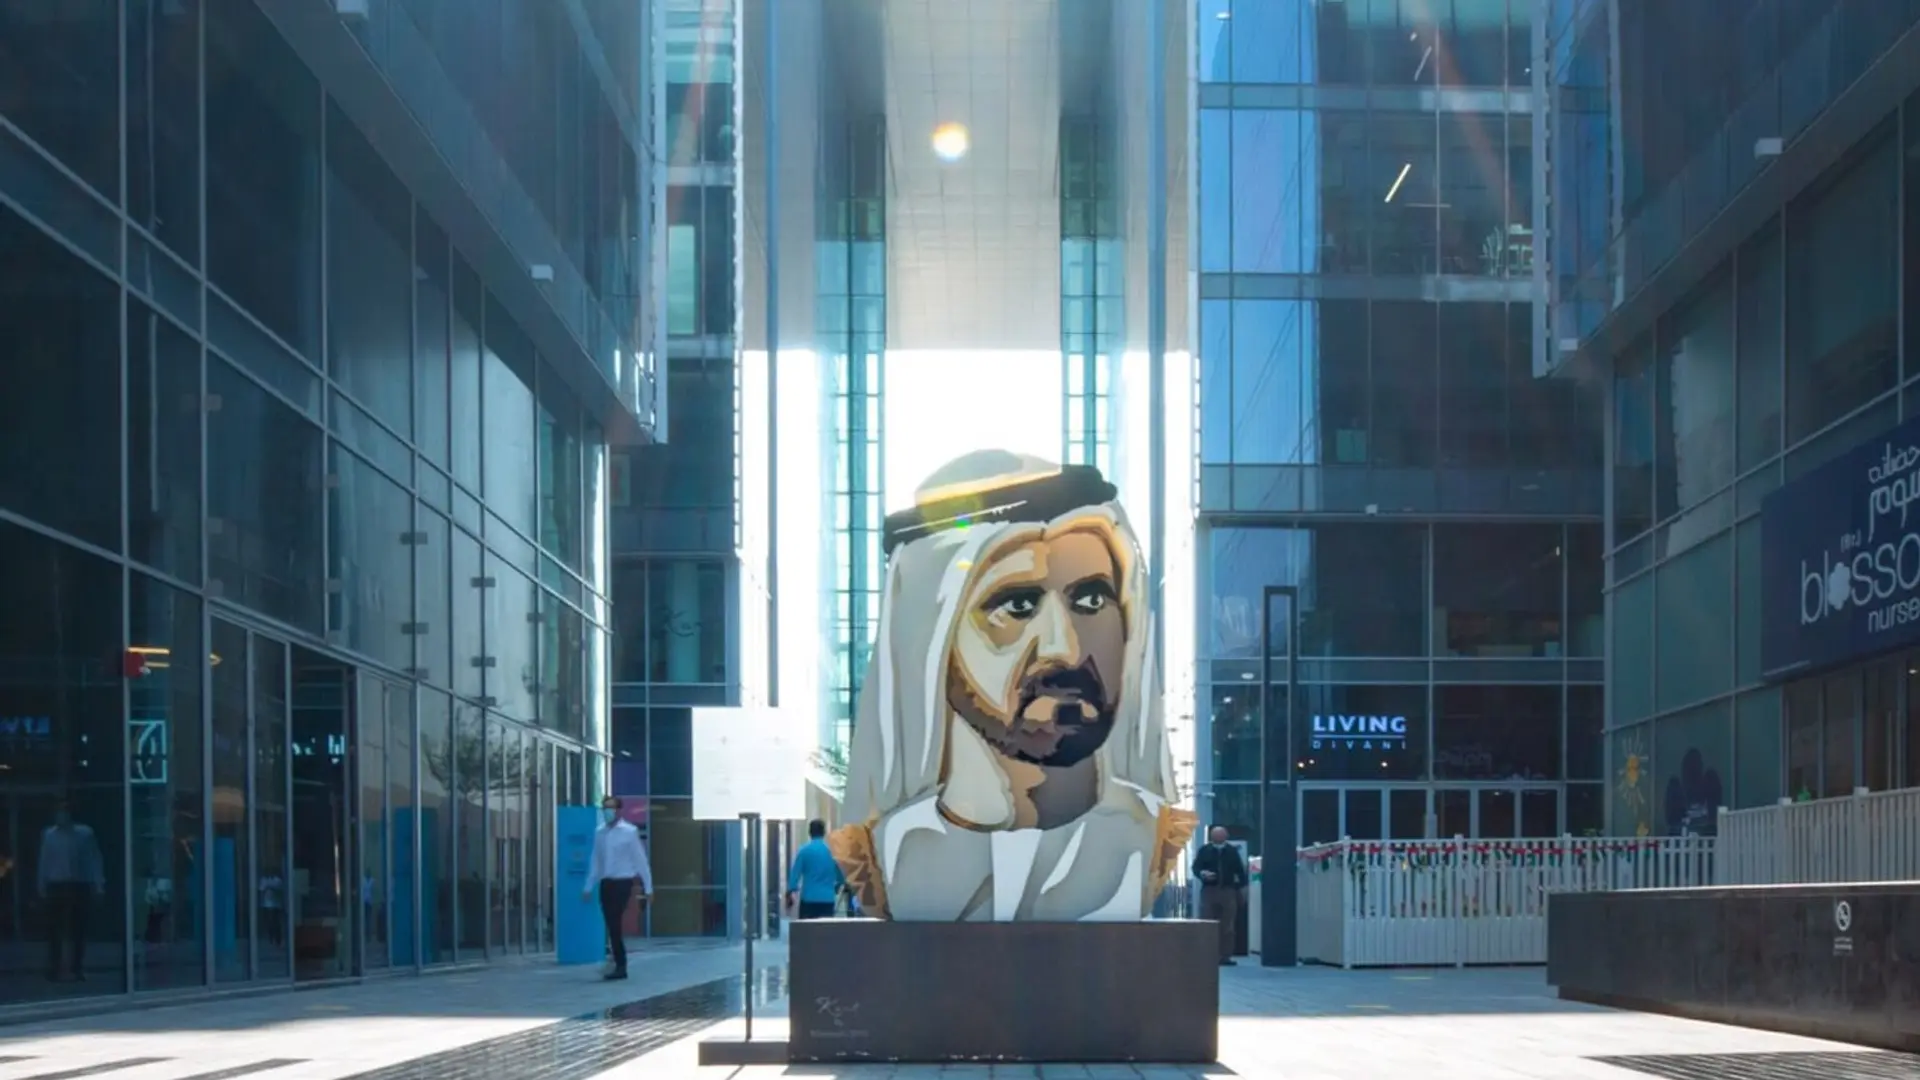 The Dubai Design District's entrance